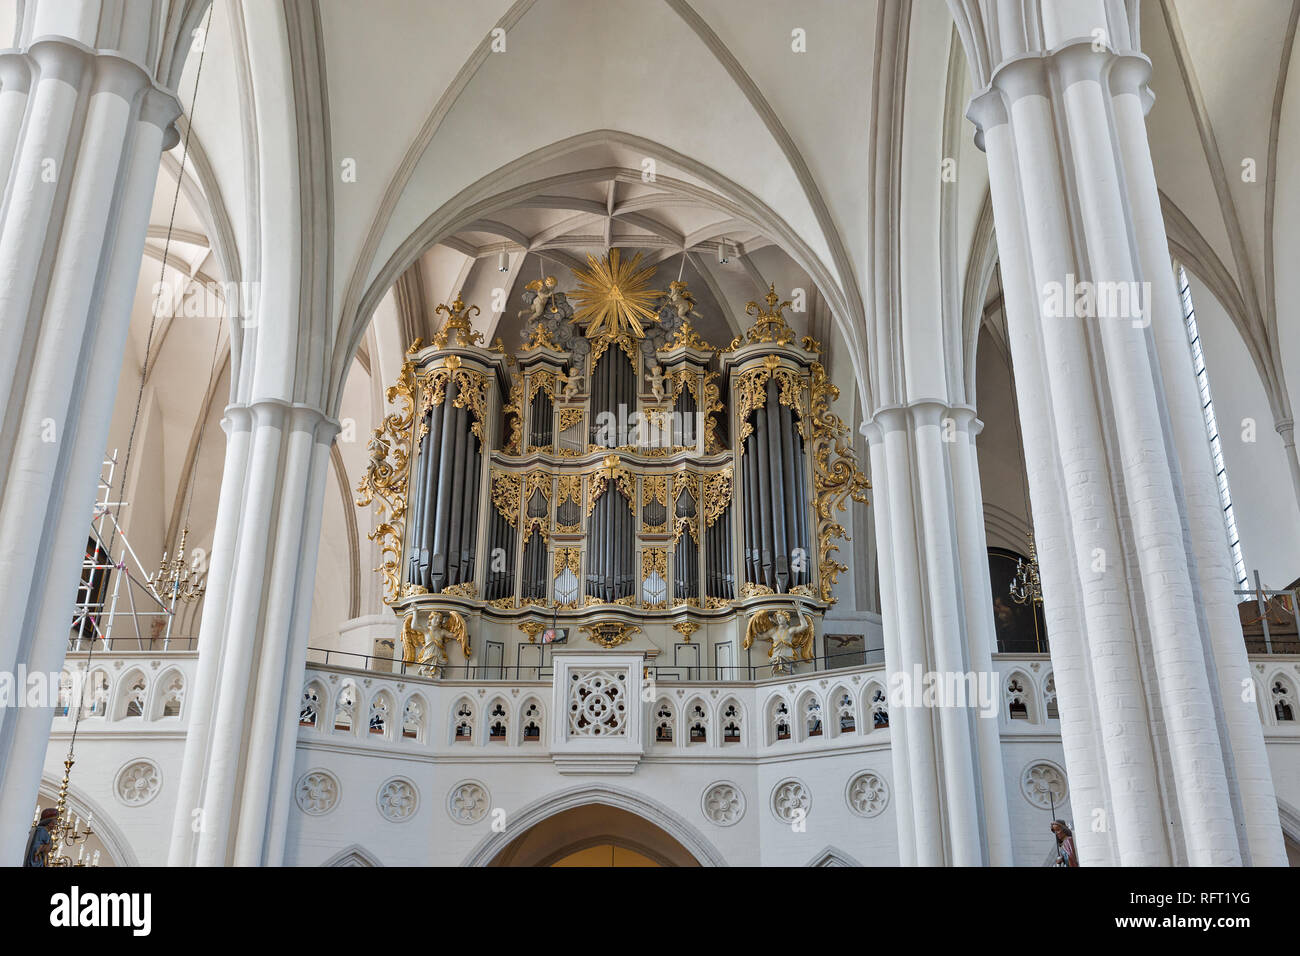 Interieur mit Orgel von St. Marien Kirche in Berlin, Deutschland. Stockfoto